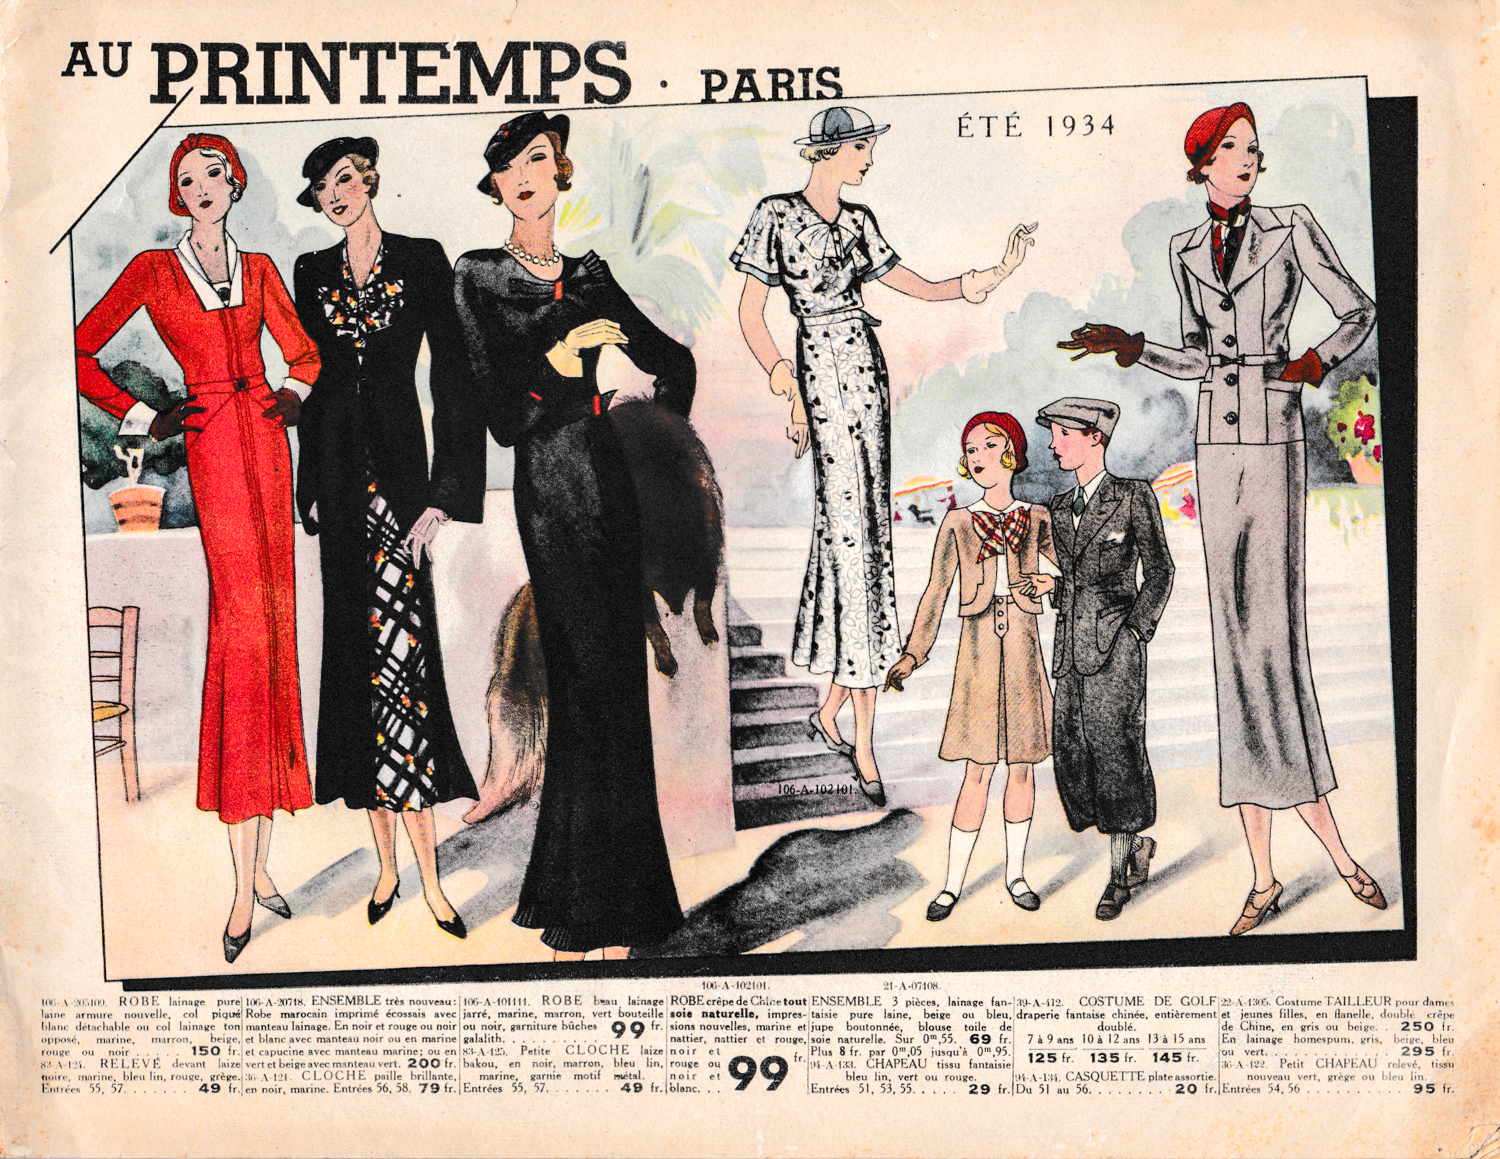 'Au Printemps Paris' Summer 1934 Department Store Catalogue, 1934, France. The Underpinnings Museum